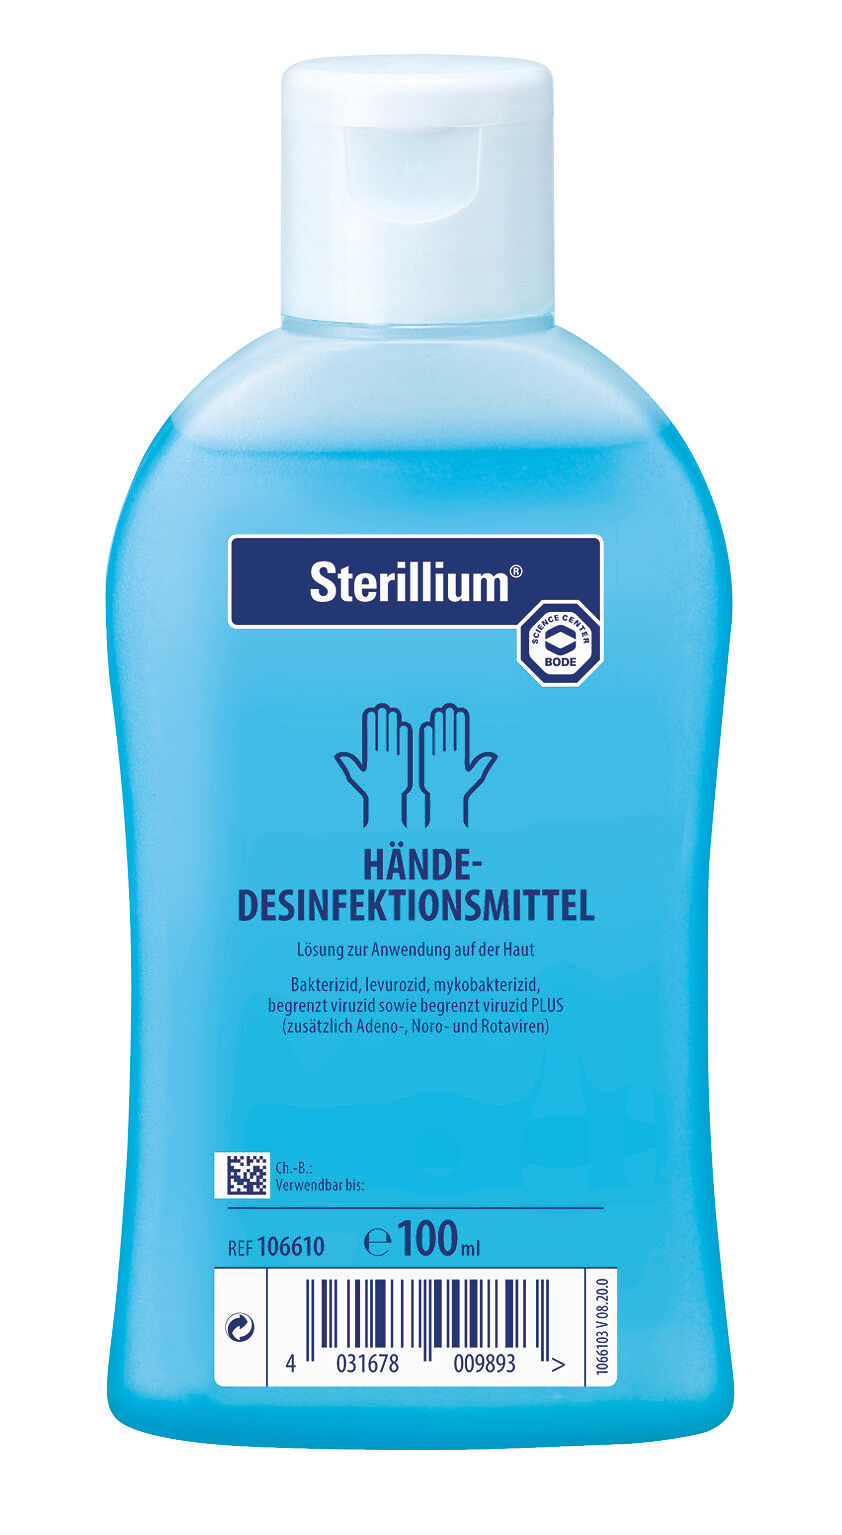 Sterillium Händedesinfektionsmittel in der 100ml-Flasche